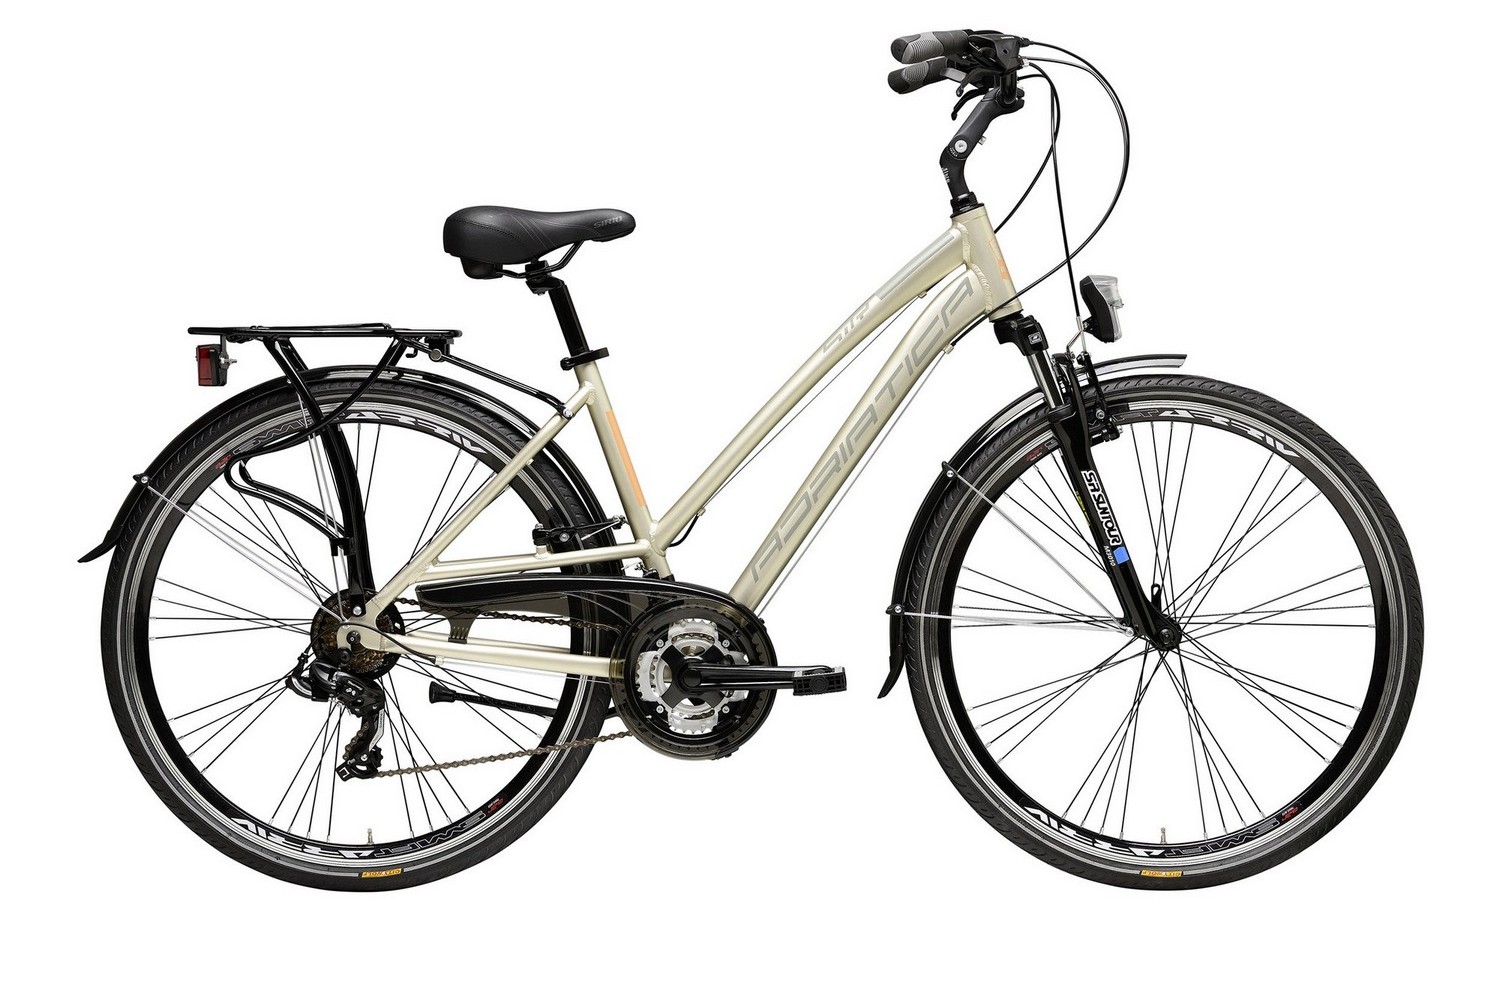 Женский велосипед Adriatica Sity 2 Lady New 28, год 2020, цвет Черный, ростовка 17.5